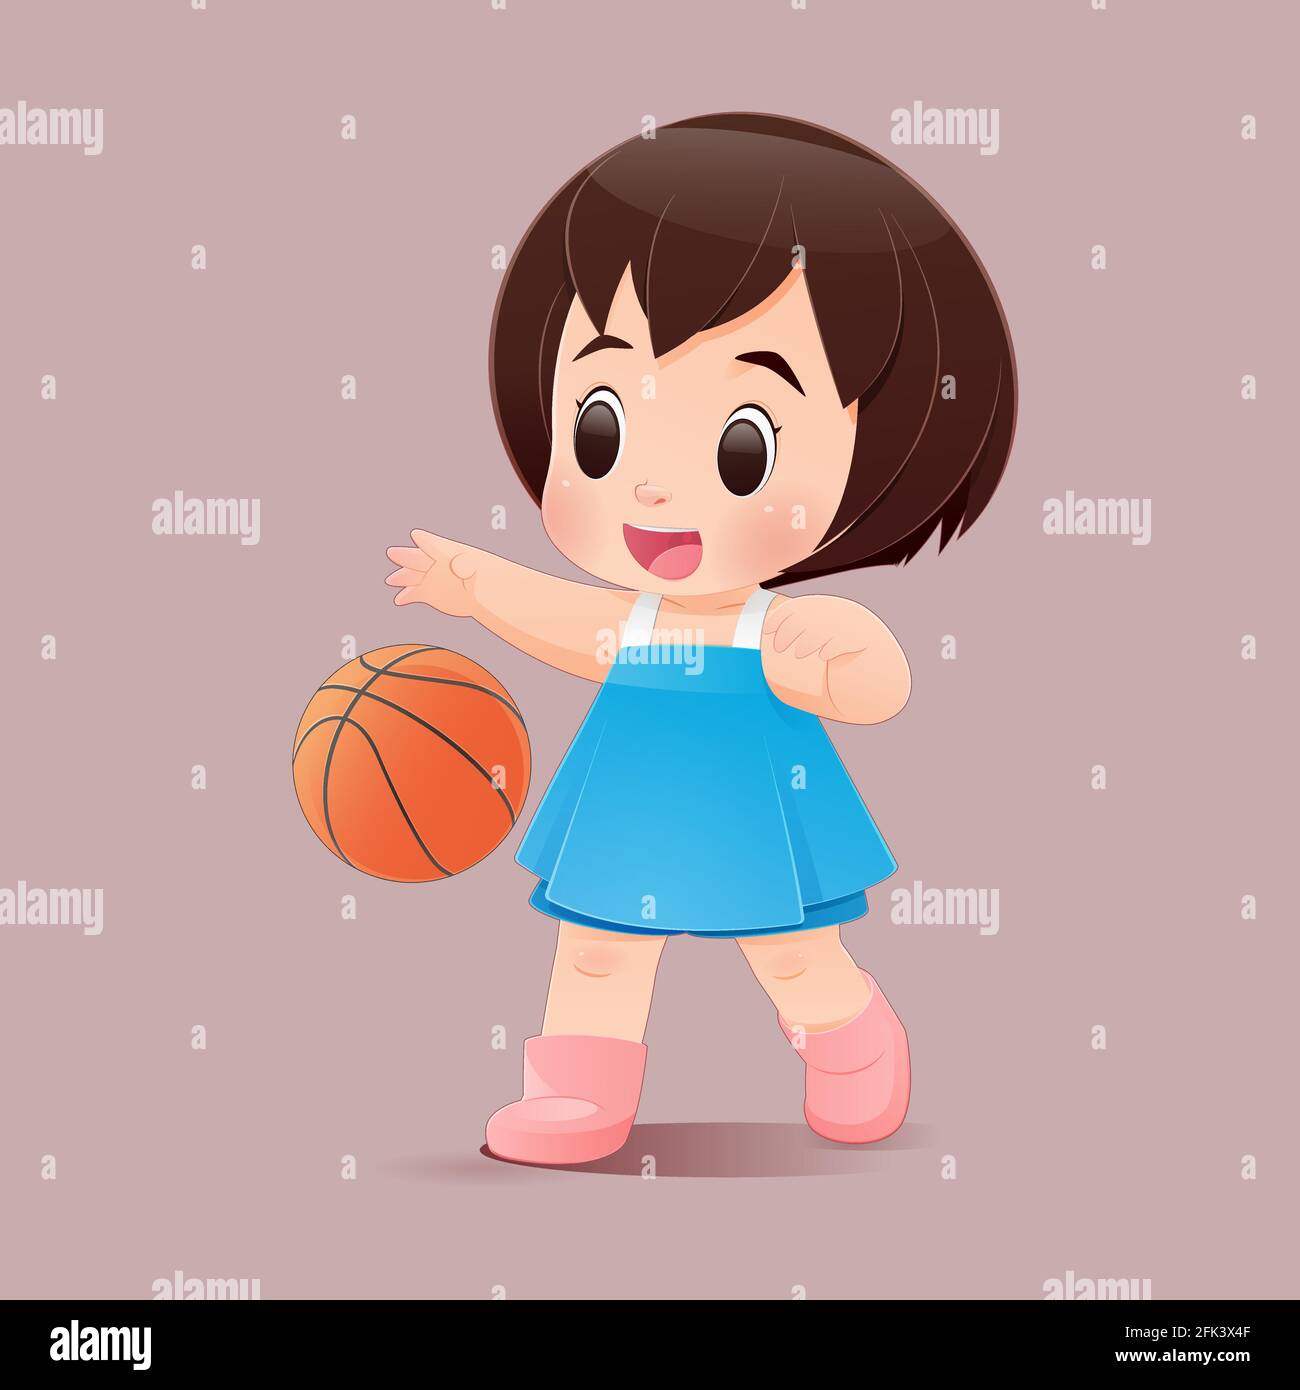 Nettes kleines Mädchen spielt Basketball in einem rosa Hintergrund, EIN Mädchen in einem blauen Kleid hüpft einen Basketball, Flat Charakter Illustration Design. Stock Vektor